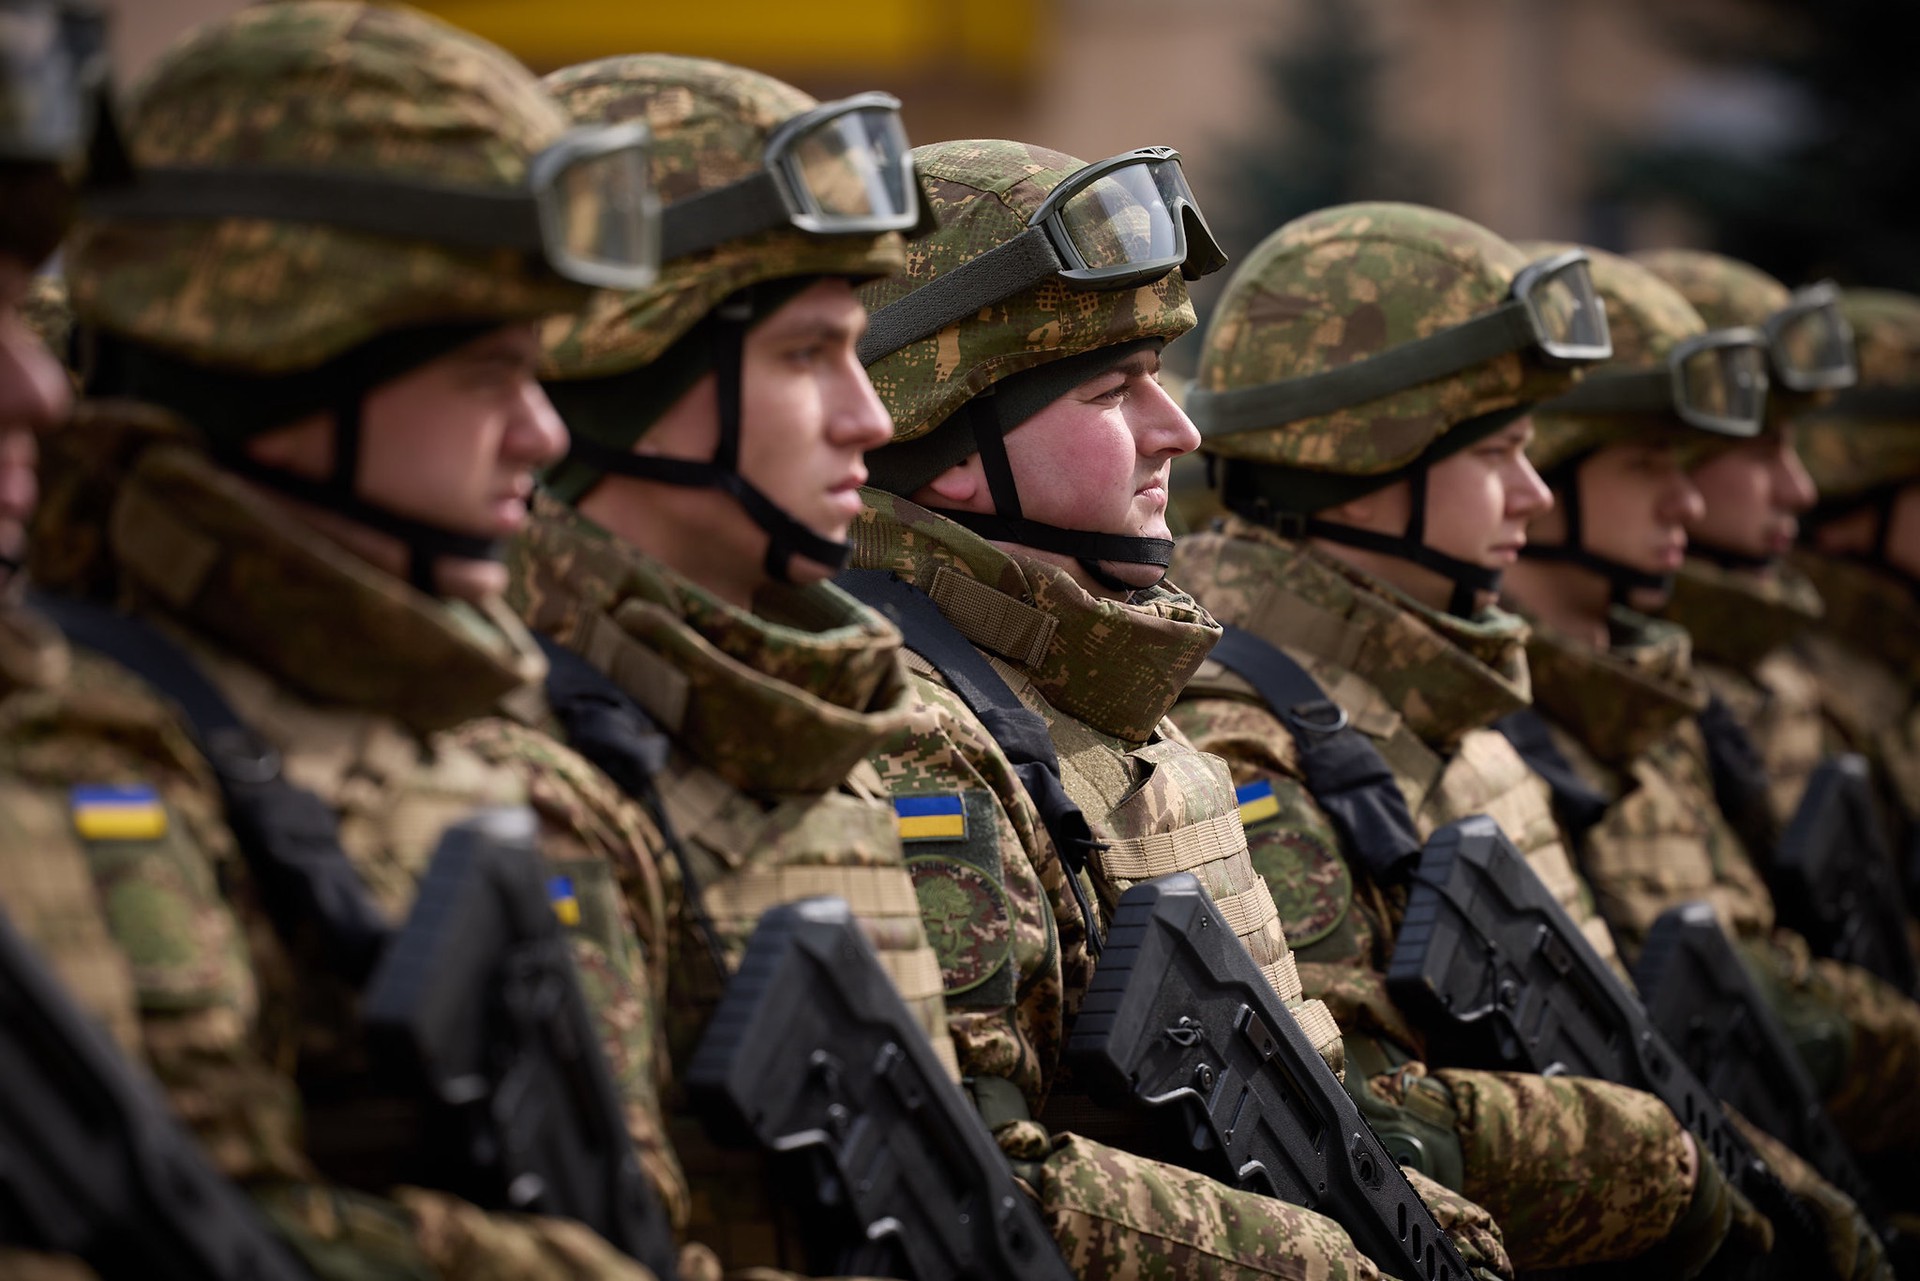 Миршаймер: Украина хочет вторгнуться в Россию и втянуть НАТО в конфликт